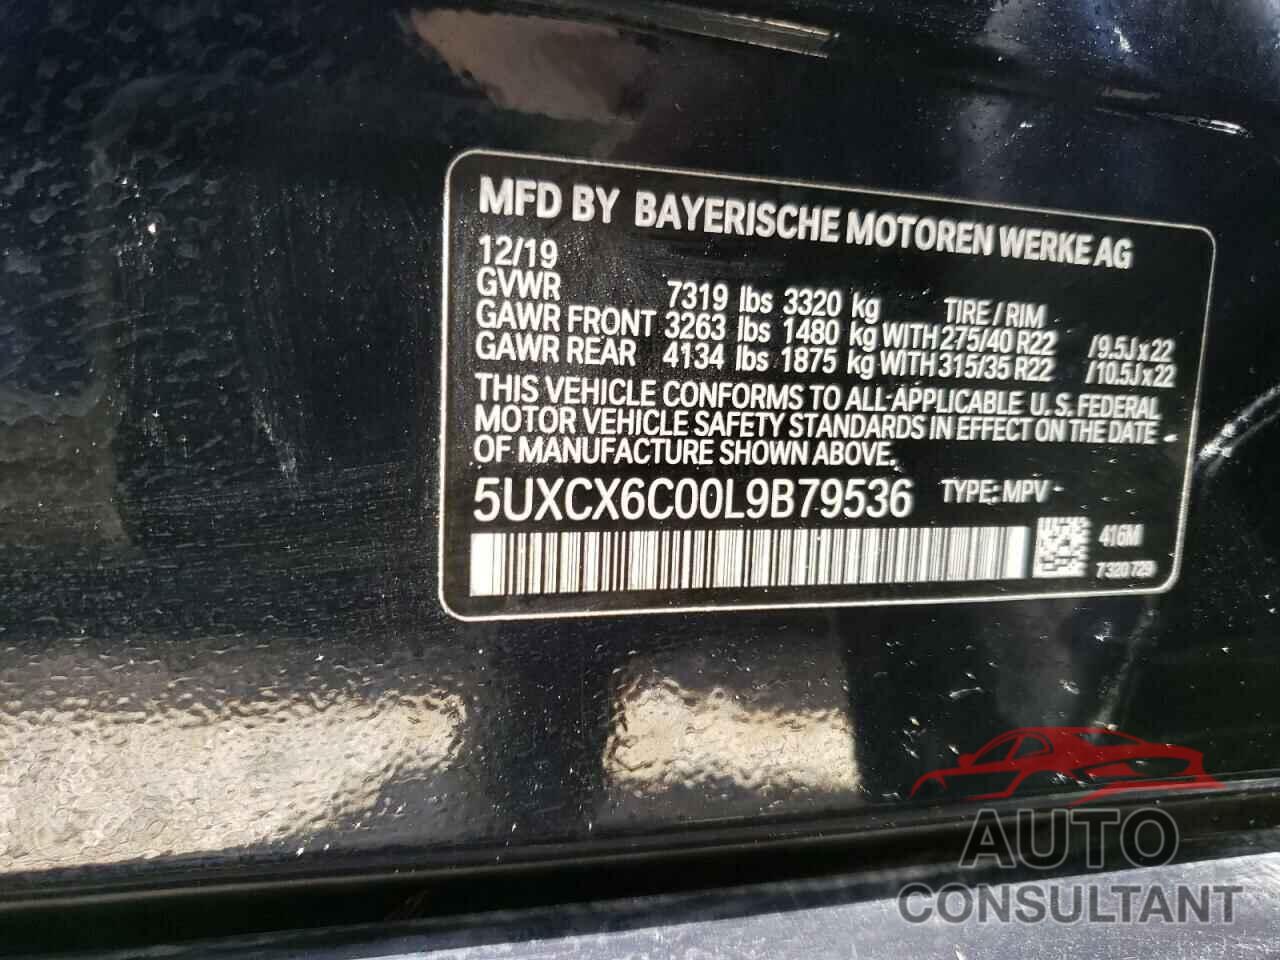 BMW X7 2020 - 5UXCX6C00L9B79536